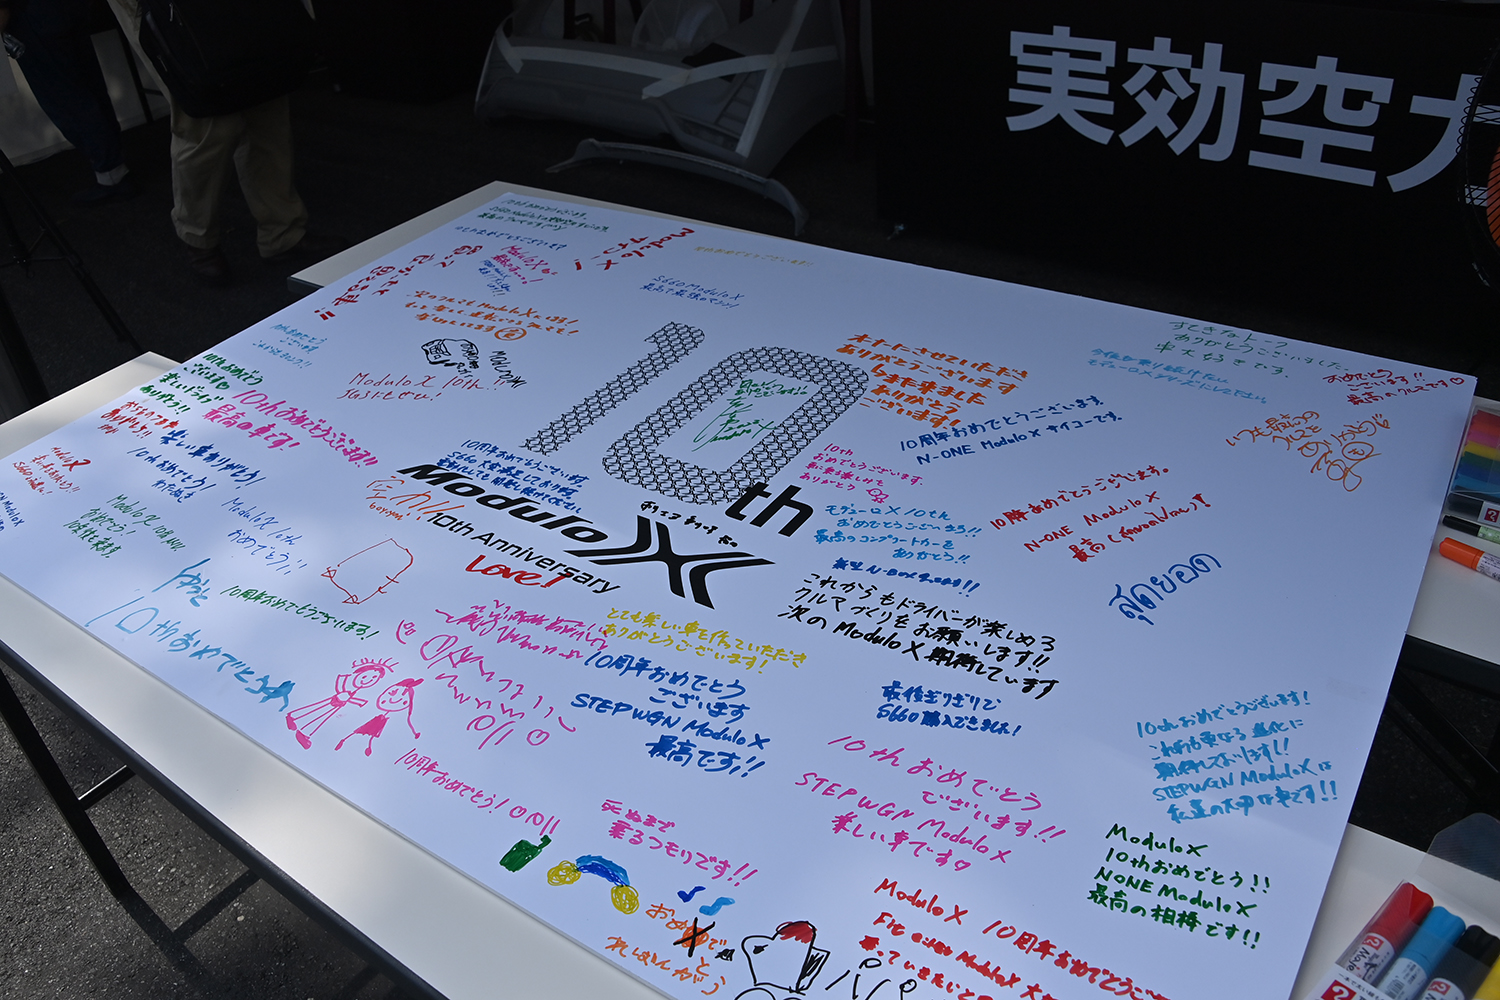 「Modulo Xシリーズ10周年記念オーナーズミーティングin群サイ」リポート 〜 画像48